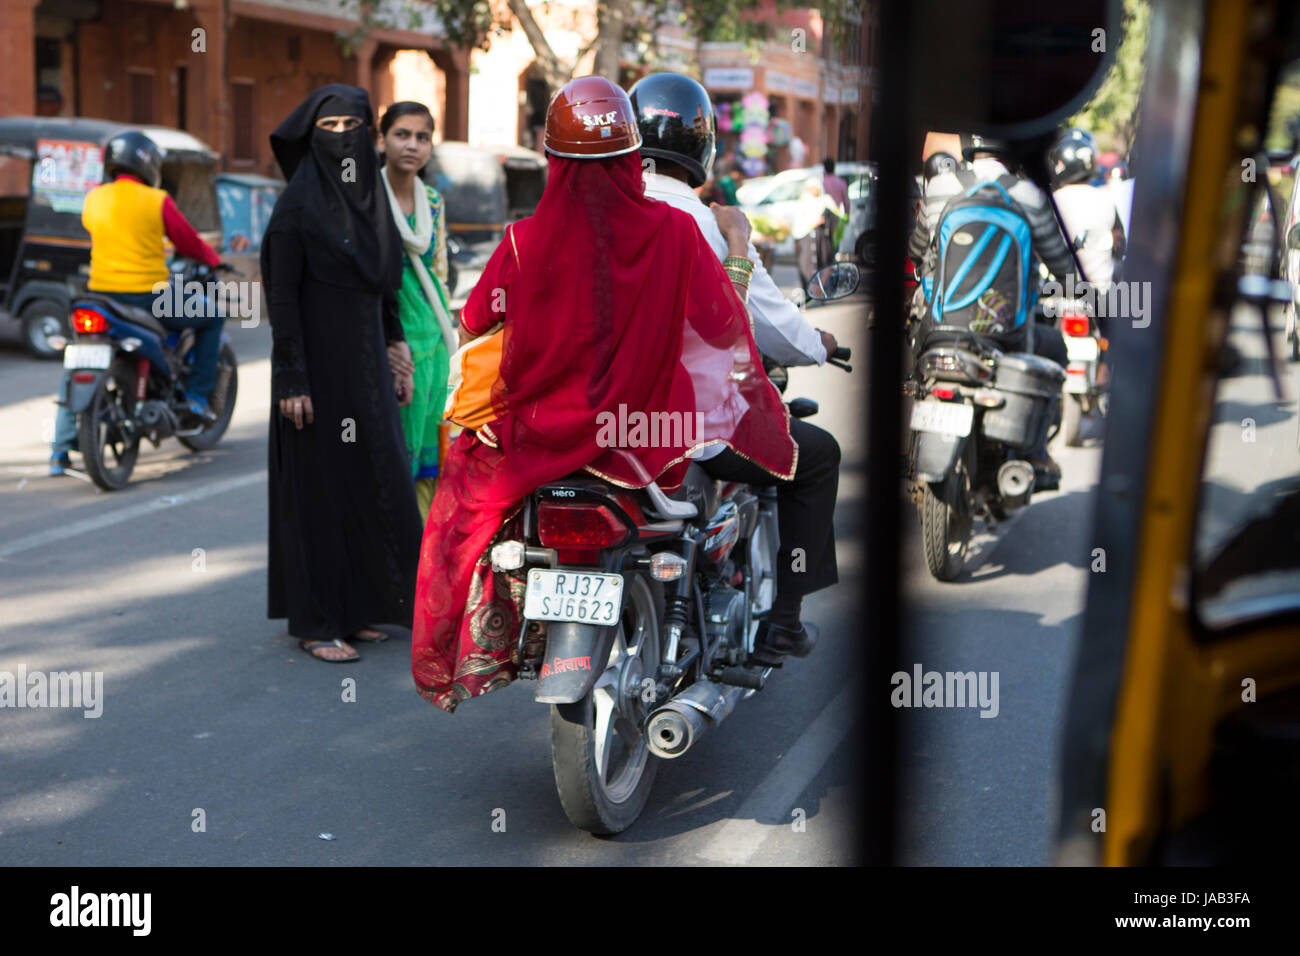 Une dame en Sari rouge côté équitation selle sur le dos d'une moto à Jaipur, Inde Banque D'Images